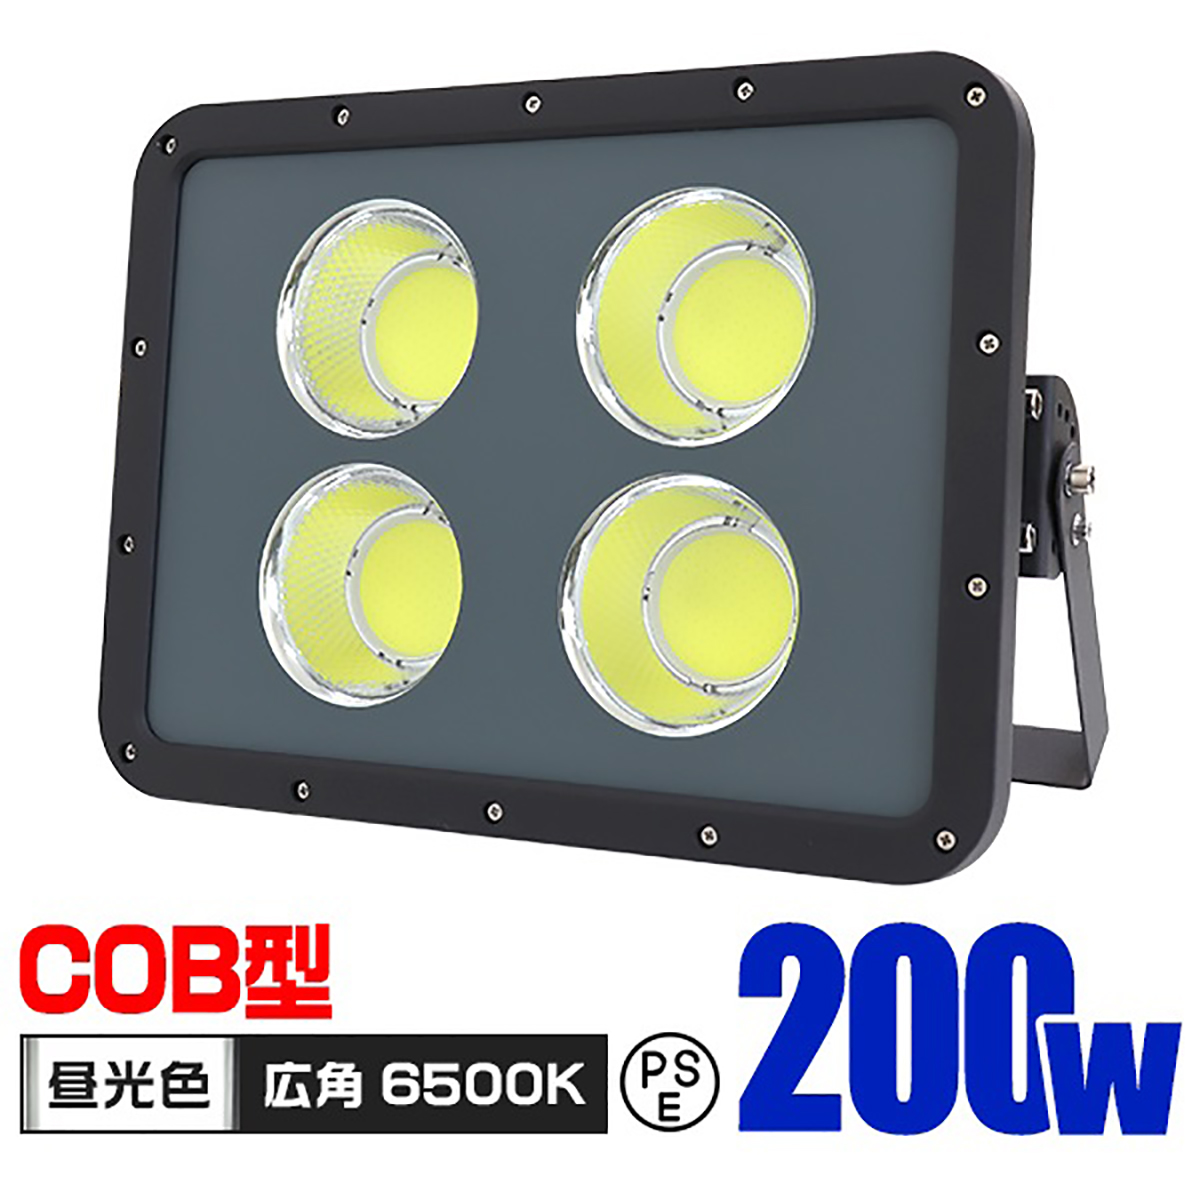 COB型 LED投光器 200W 17000lm 防水 防塵 作業灯 投光器 昼光色 6500K